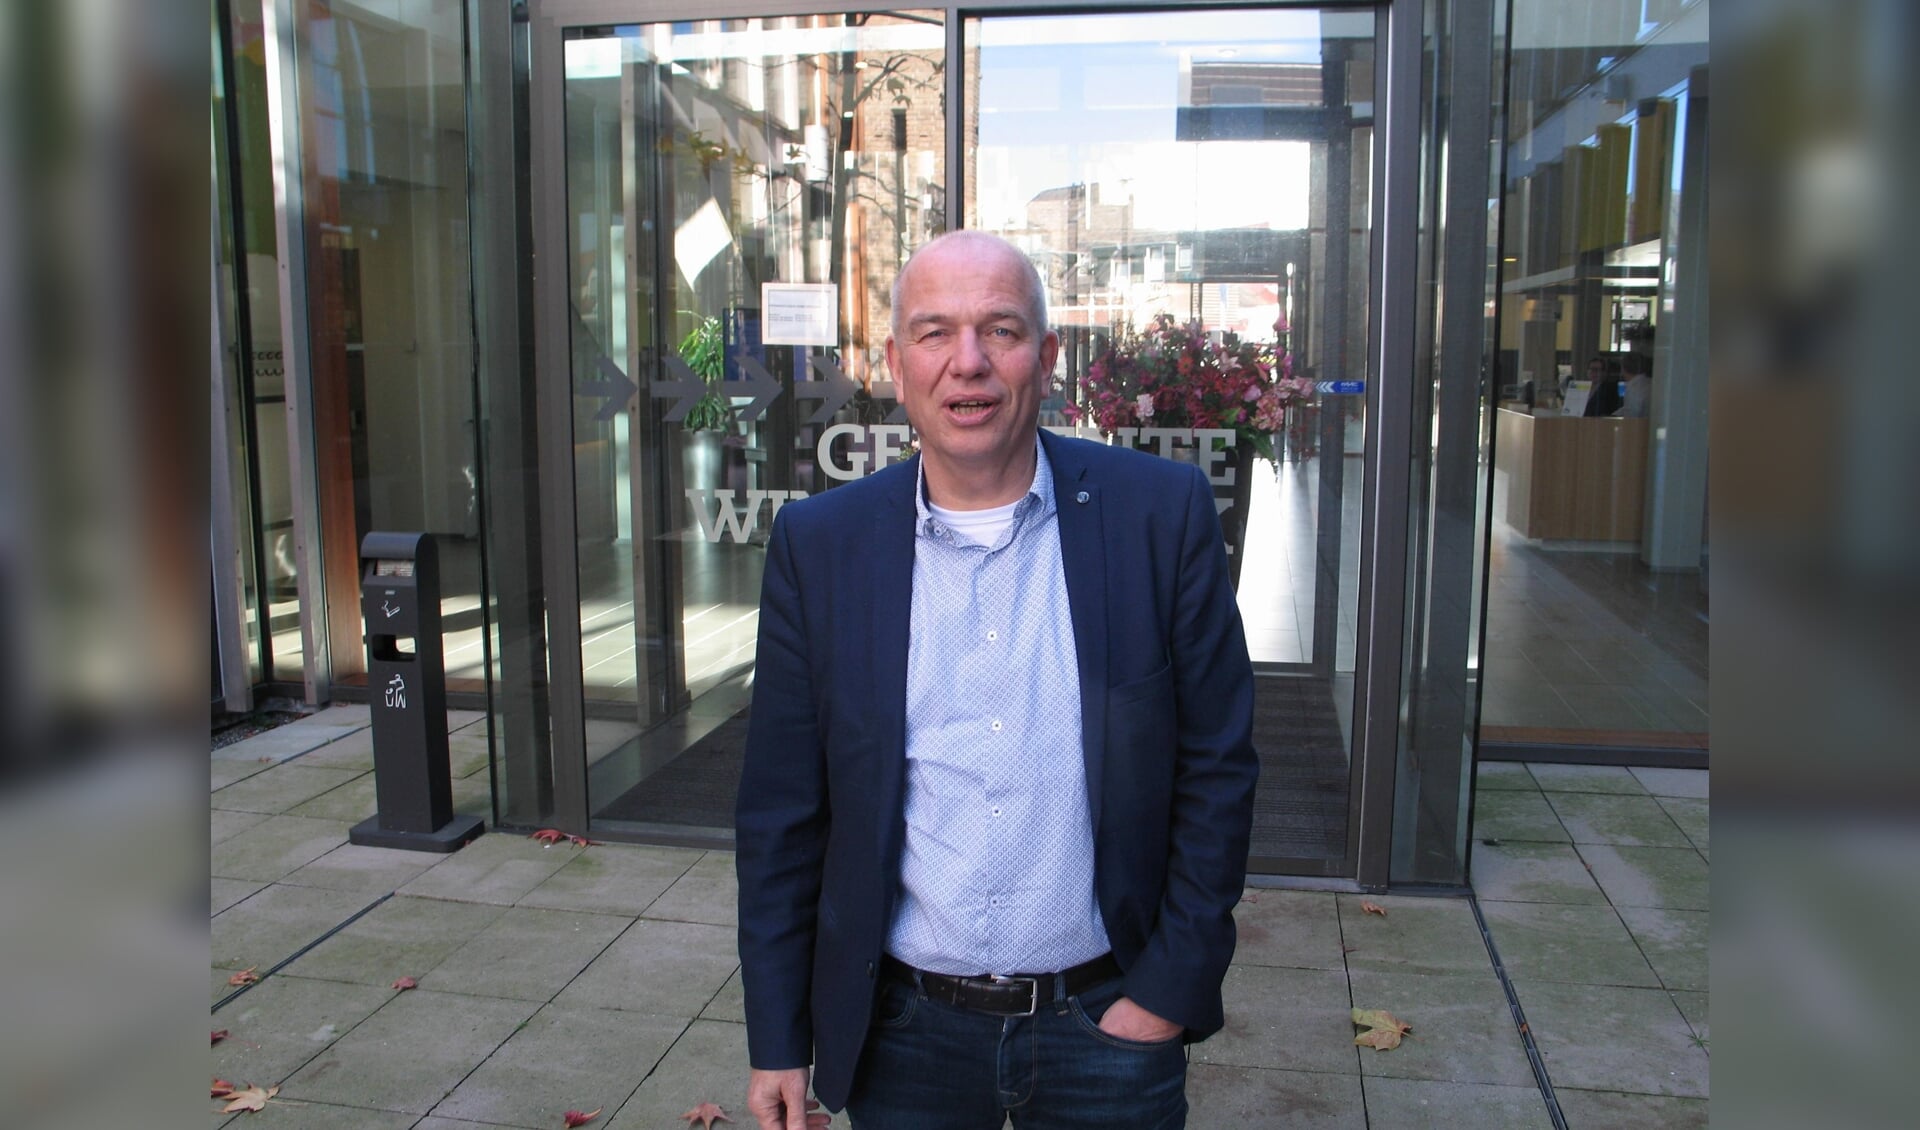 Wim Aalderink stopt vanwege gezondheid als wethouder. Foto: Bernhard Harfsterkamp